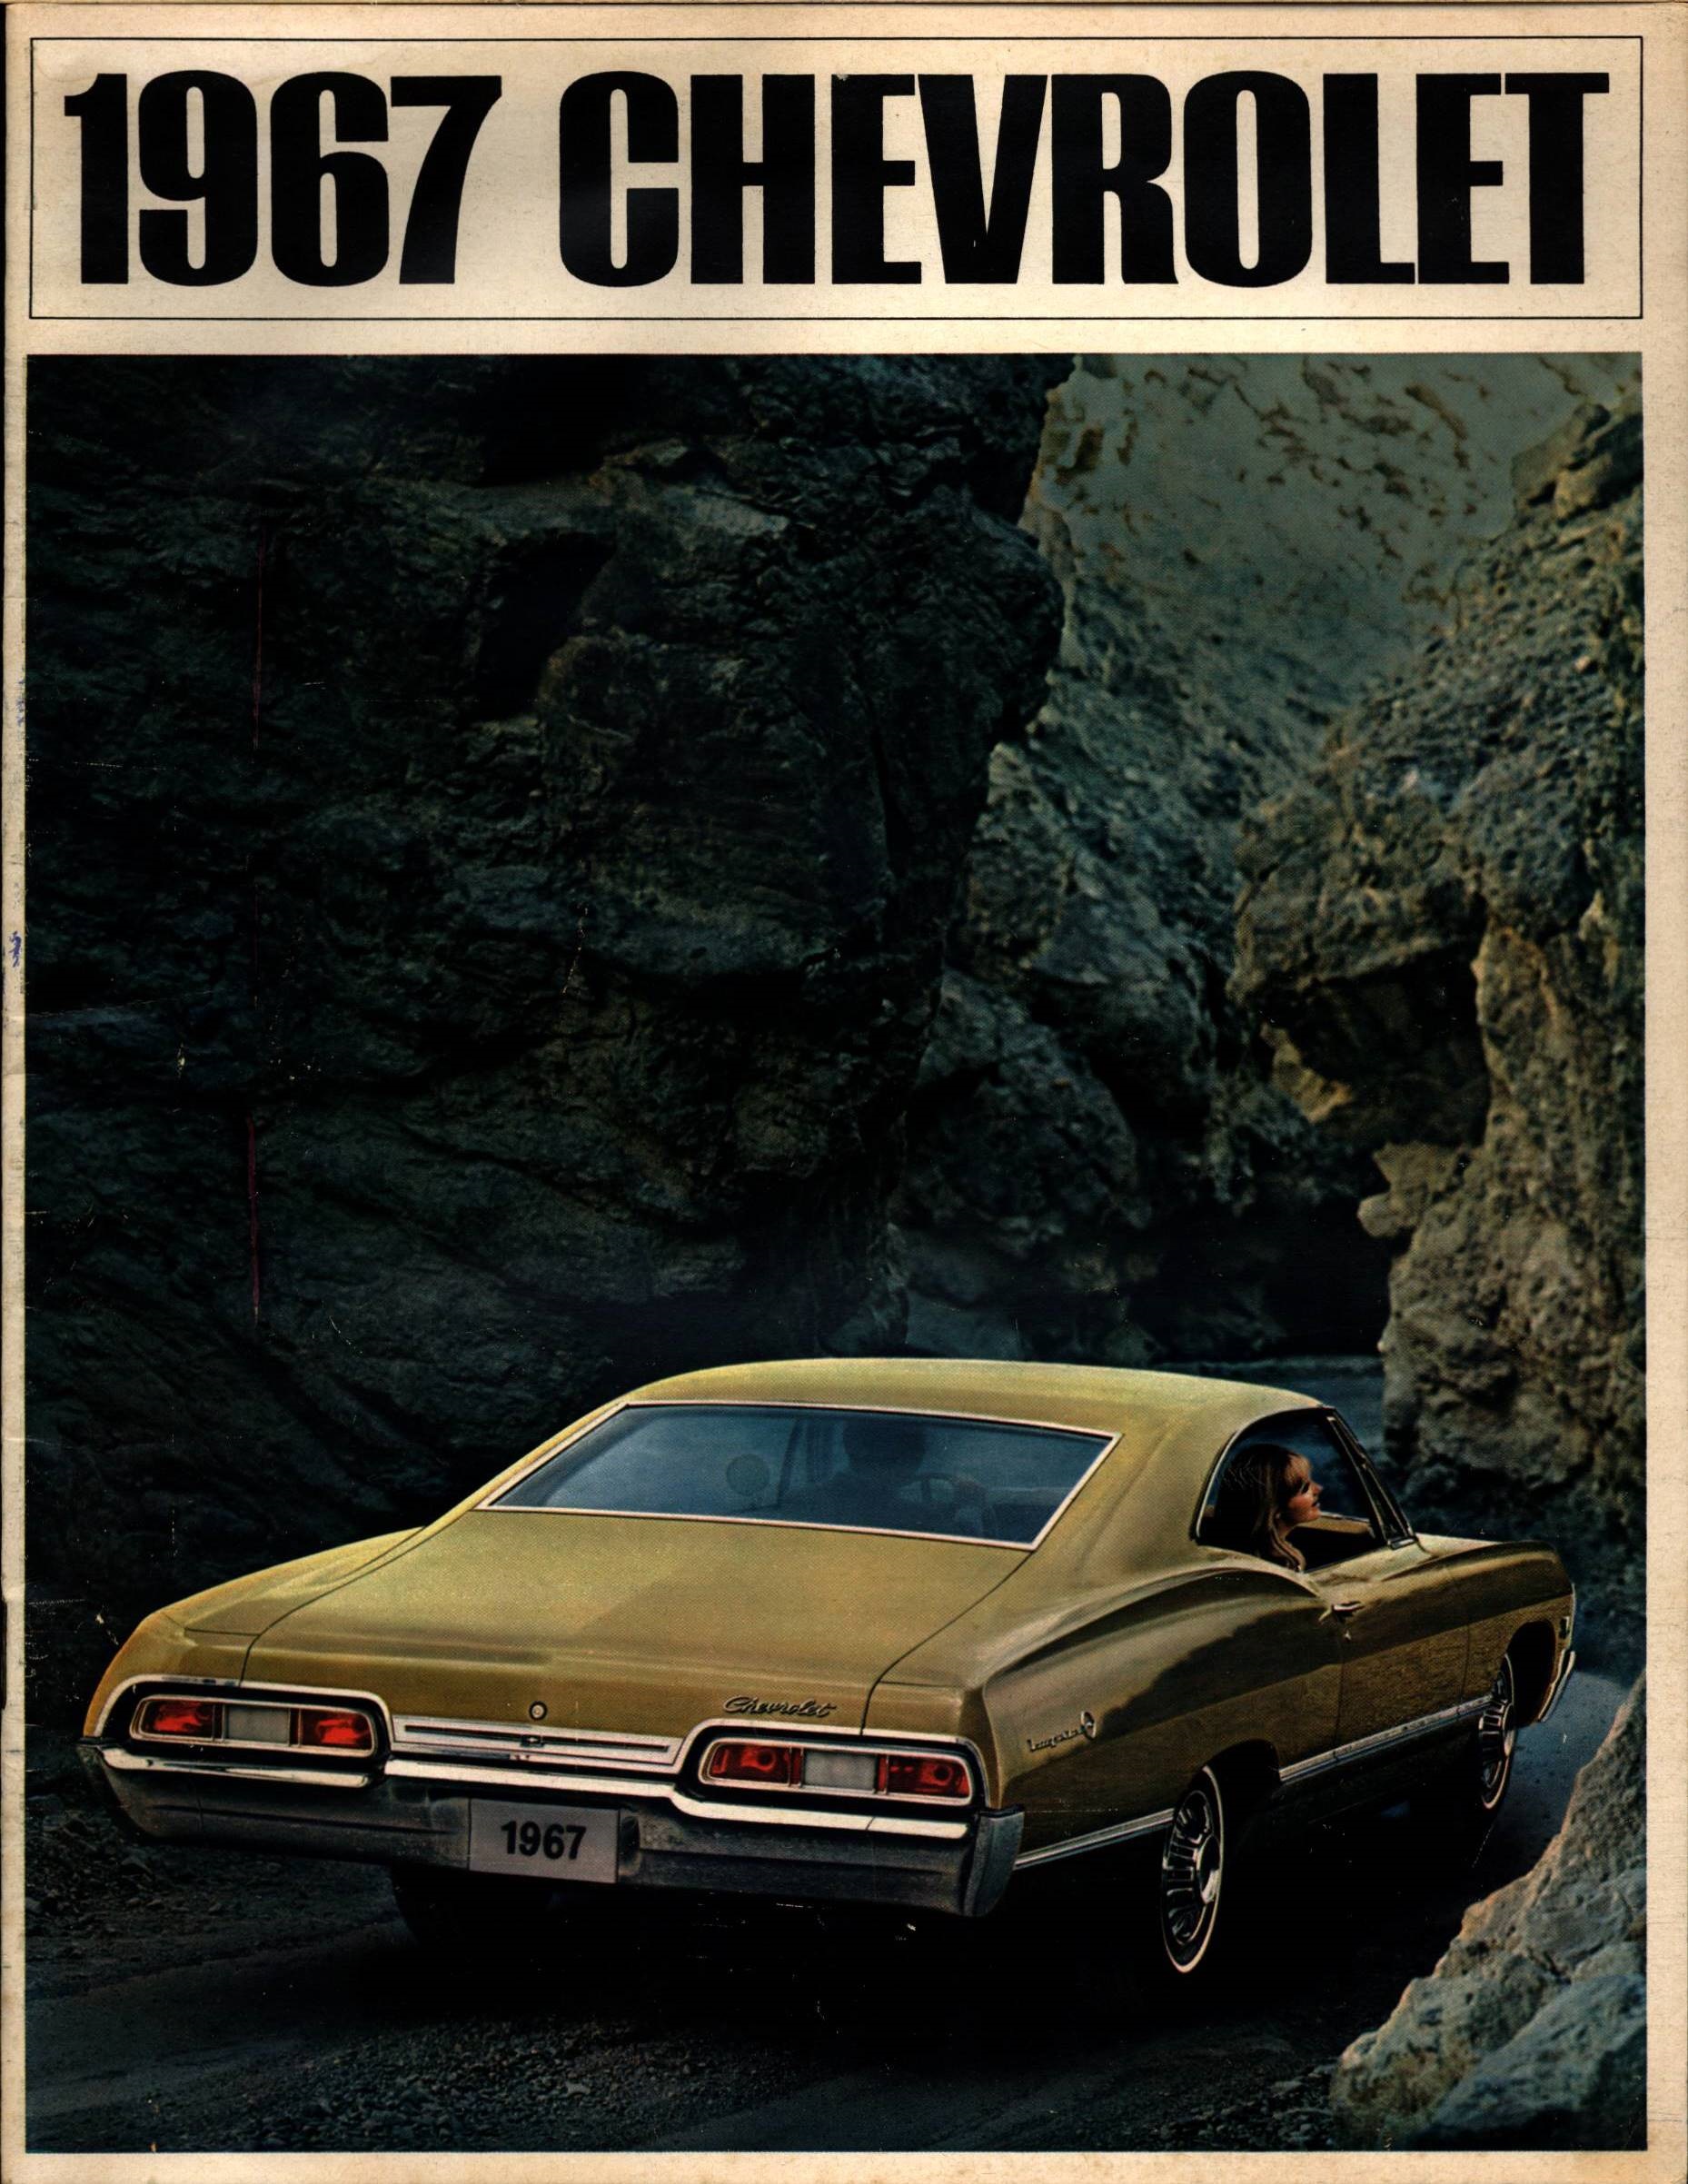 1967 Chevrolet Full Size Brochure 01